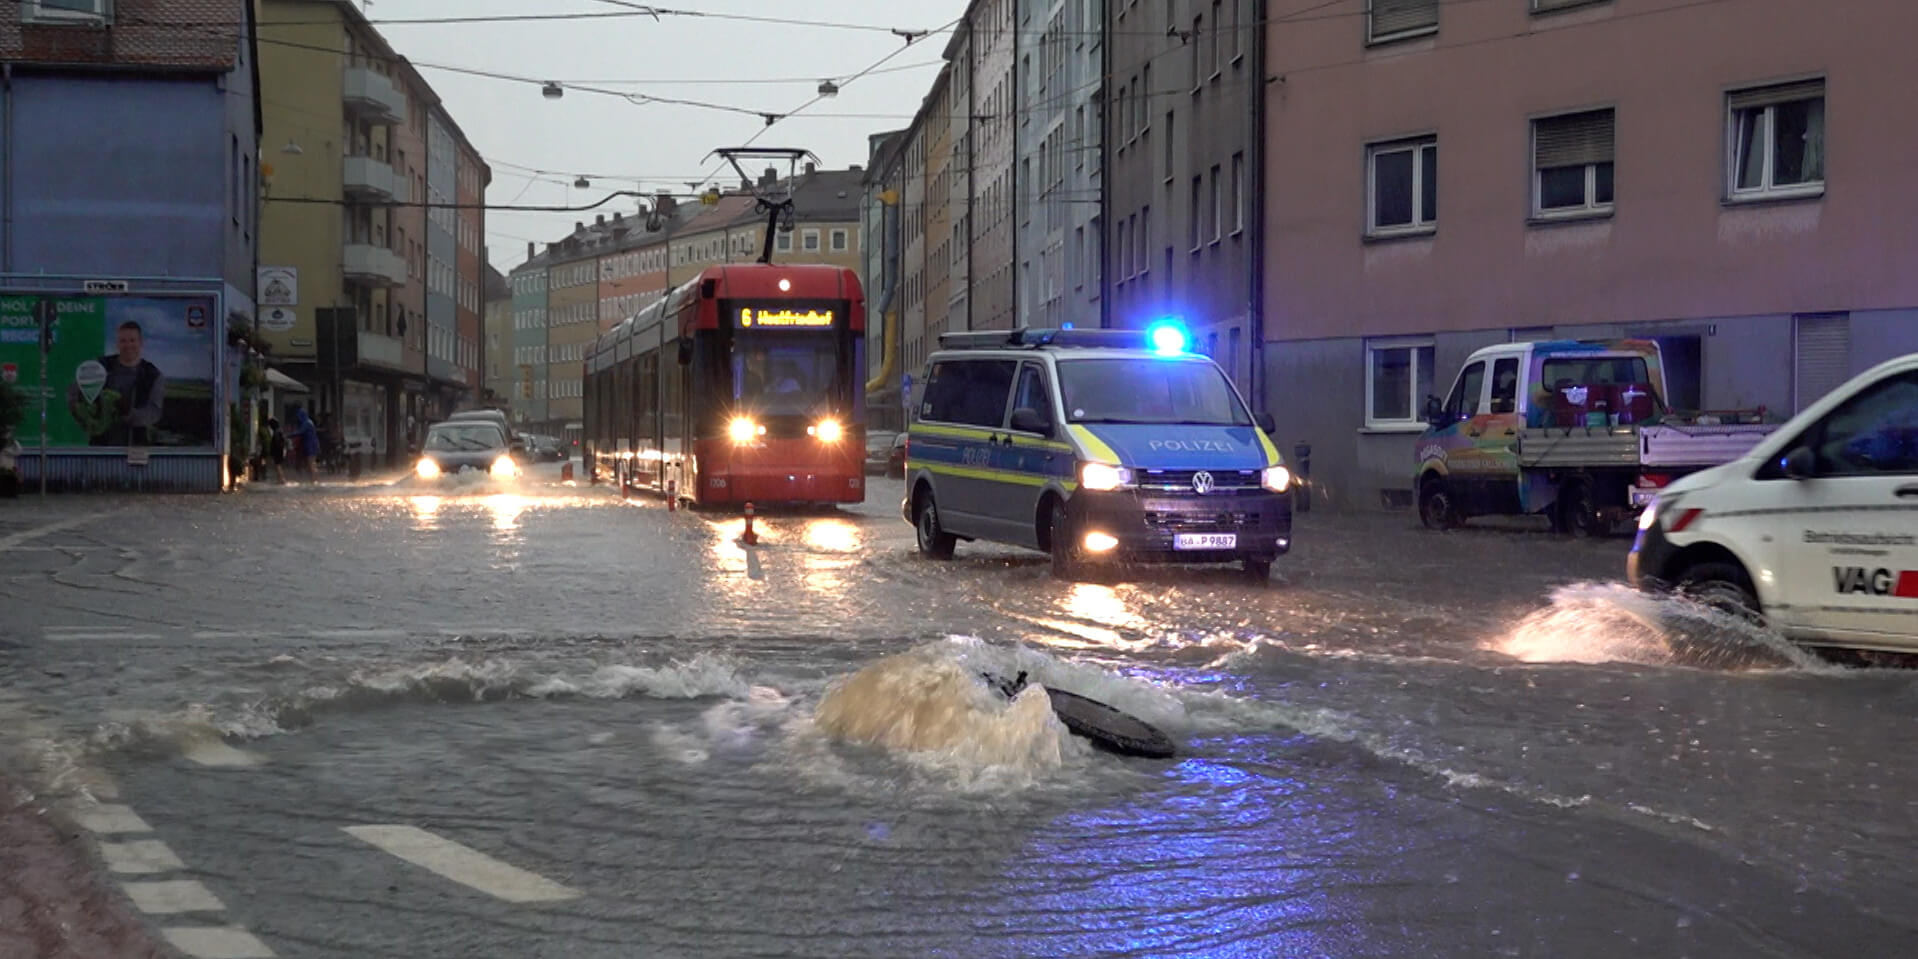 Straßenbahn, Polizeiauto und andere Autos auf einer von Regen überfluteten Straße in einer Stadt